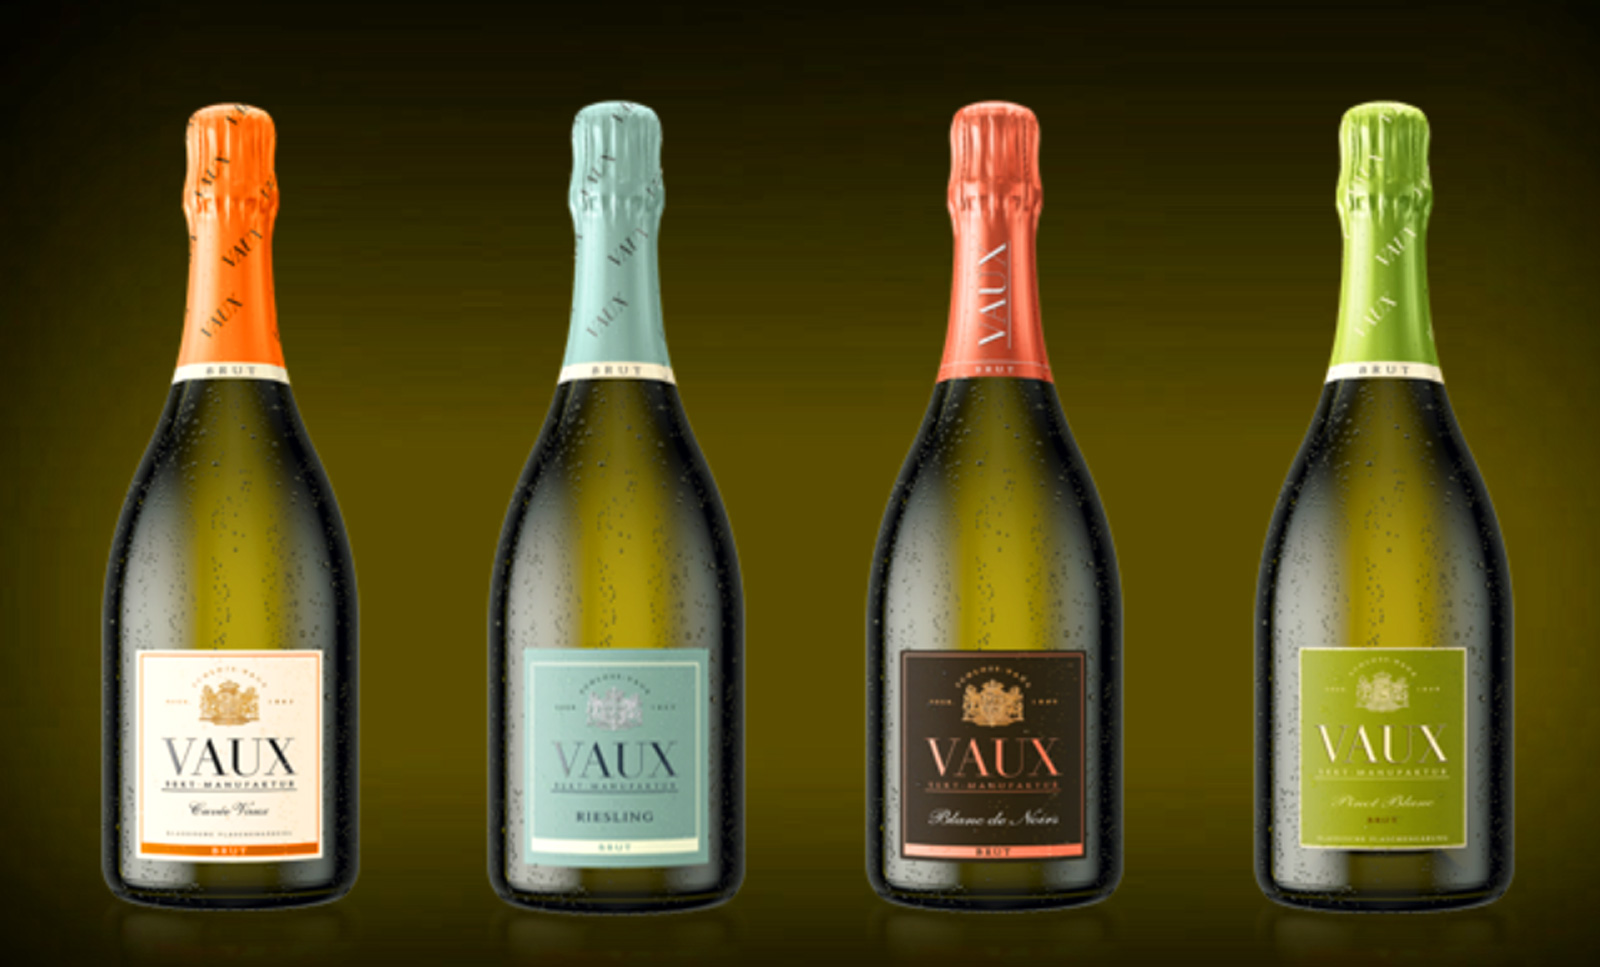 CASTELL DE XAMPANY VAUX Tots els vins escumosos VAUX s`elaboren amb el metode tradicional de fermentacio classica en ampolla i son dosificats en brut.